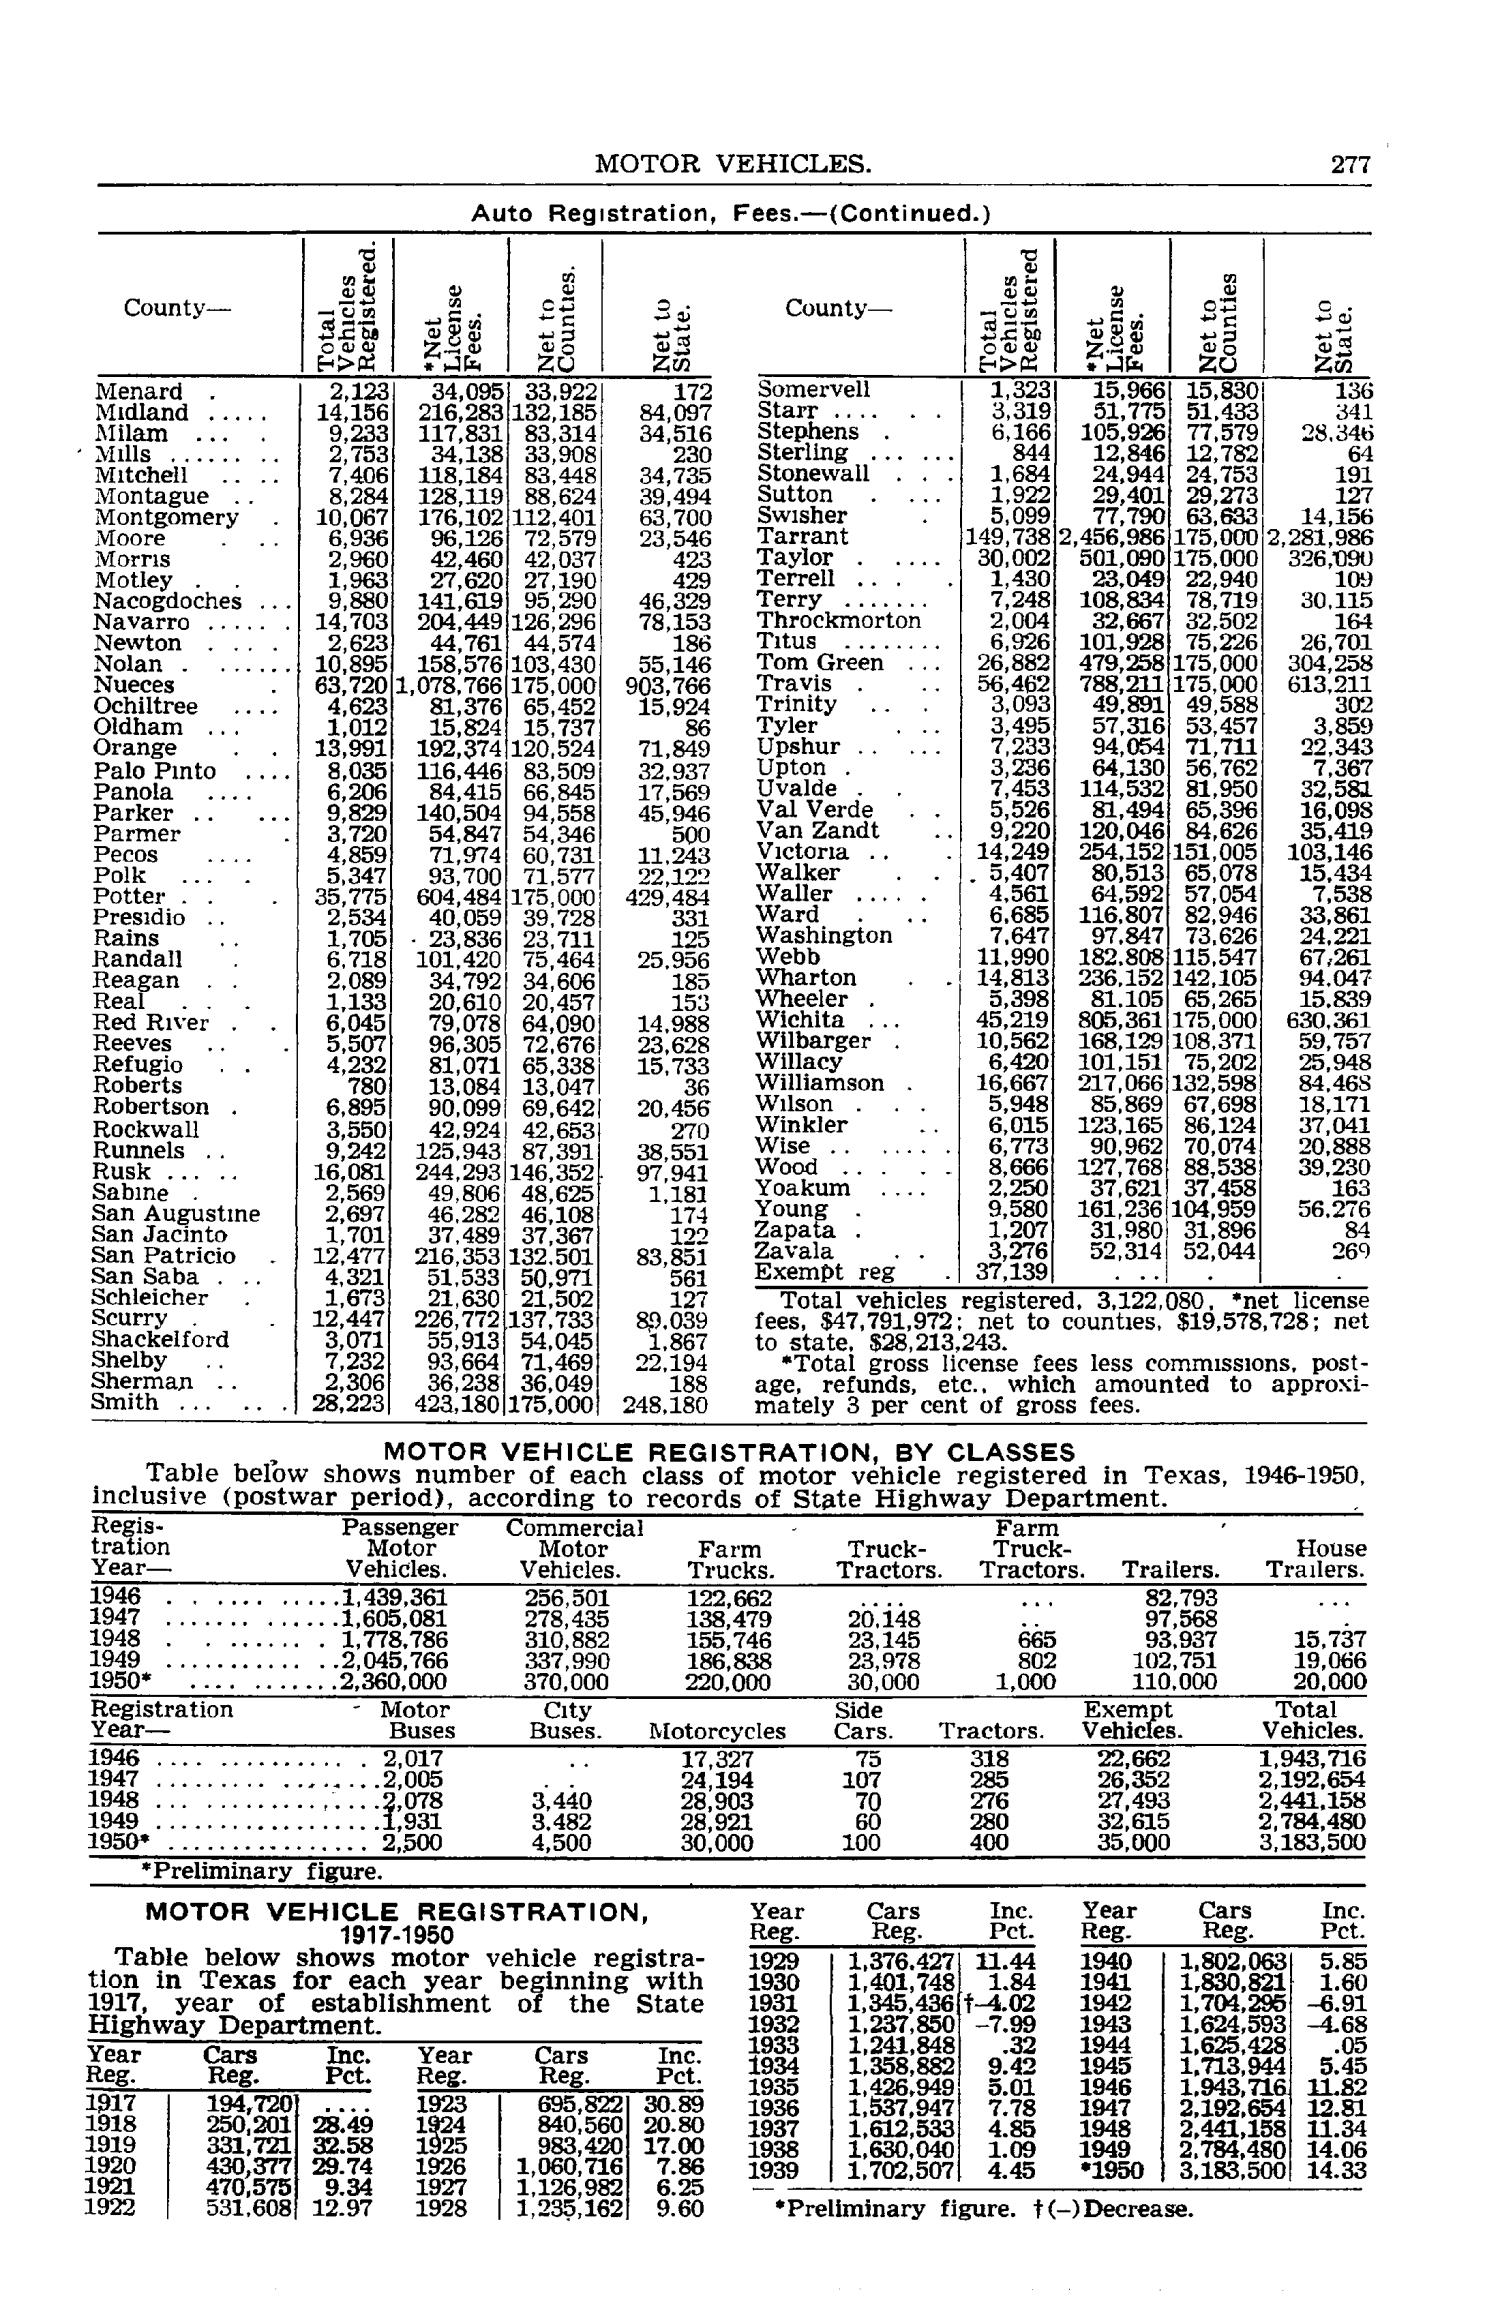 Texas Almanac, 1952-1953
                                                
                                                    277
                                                